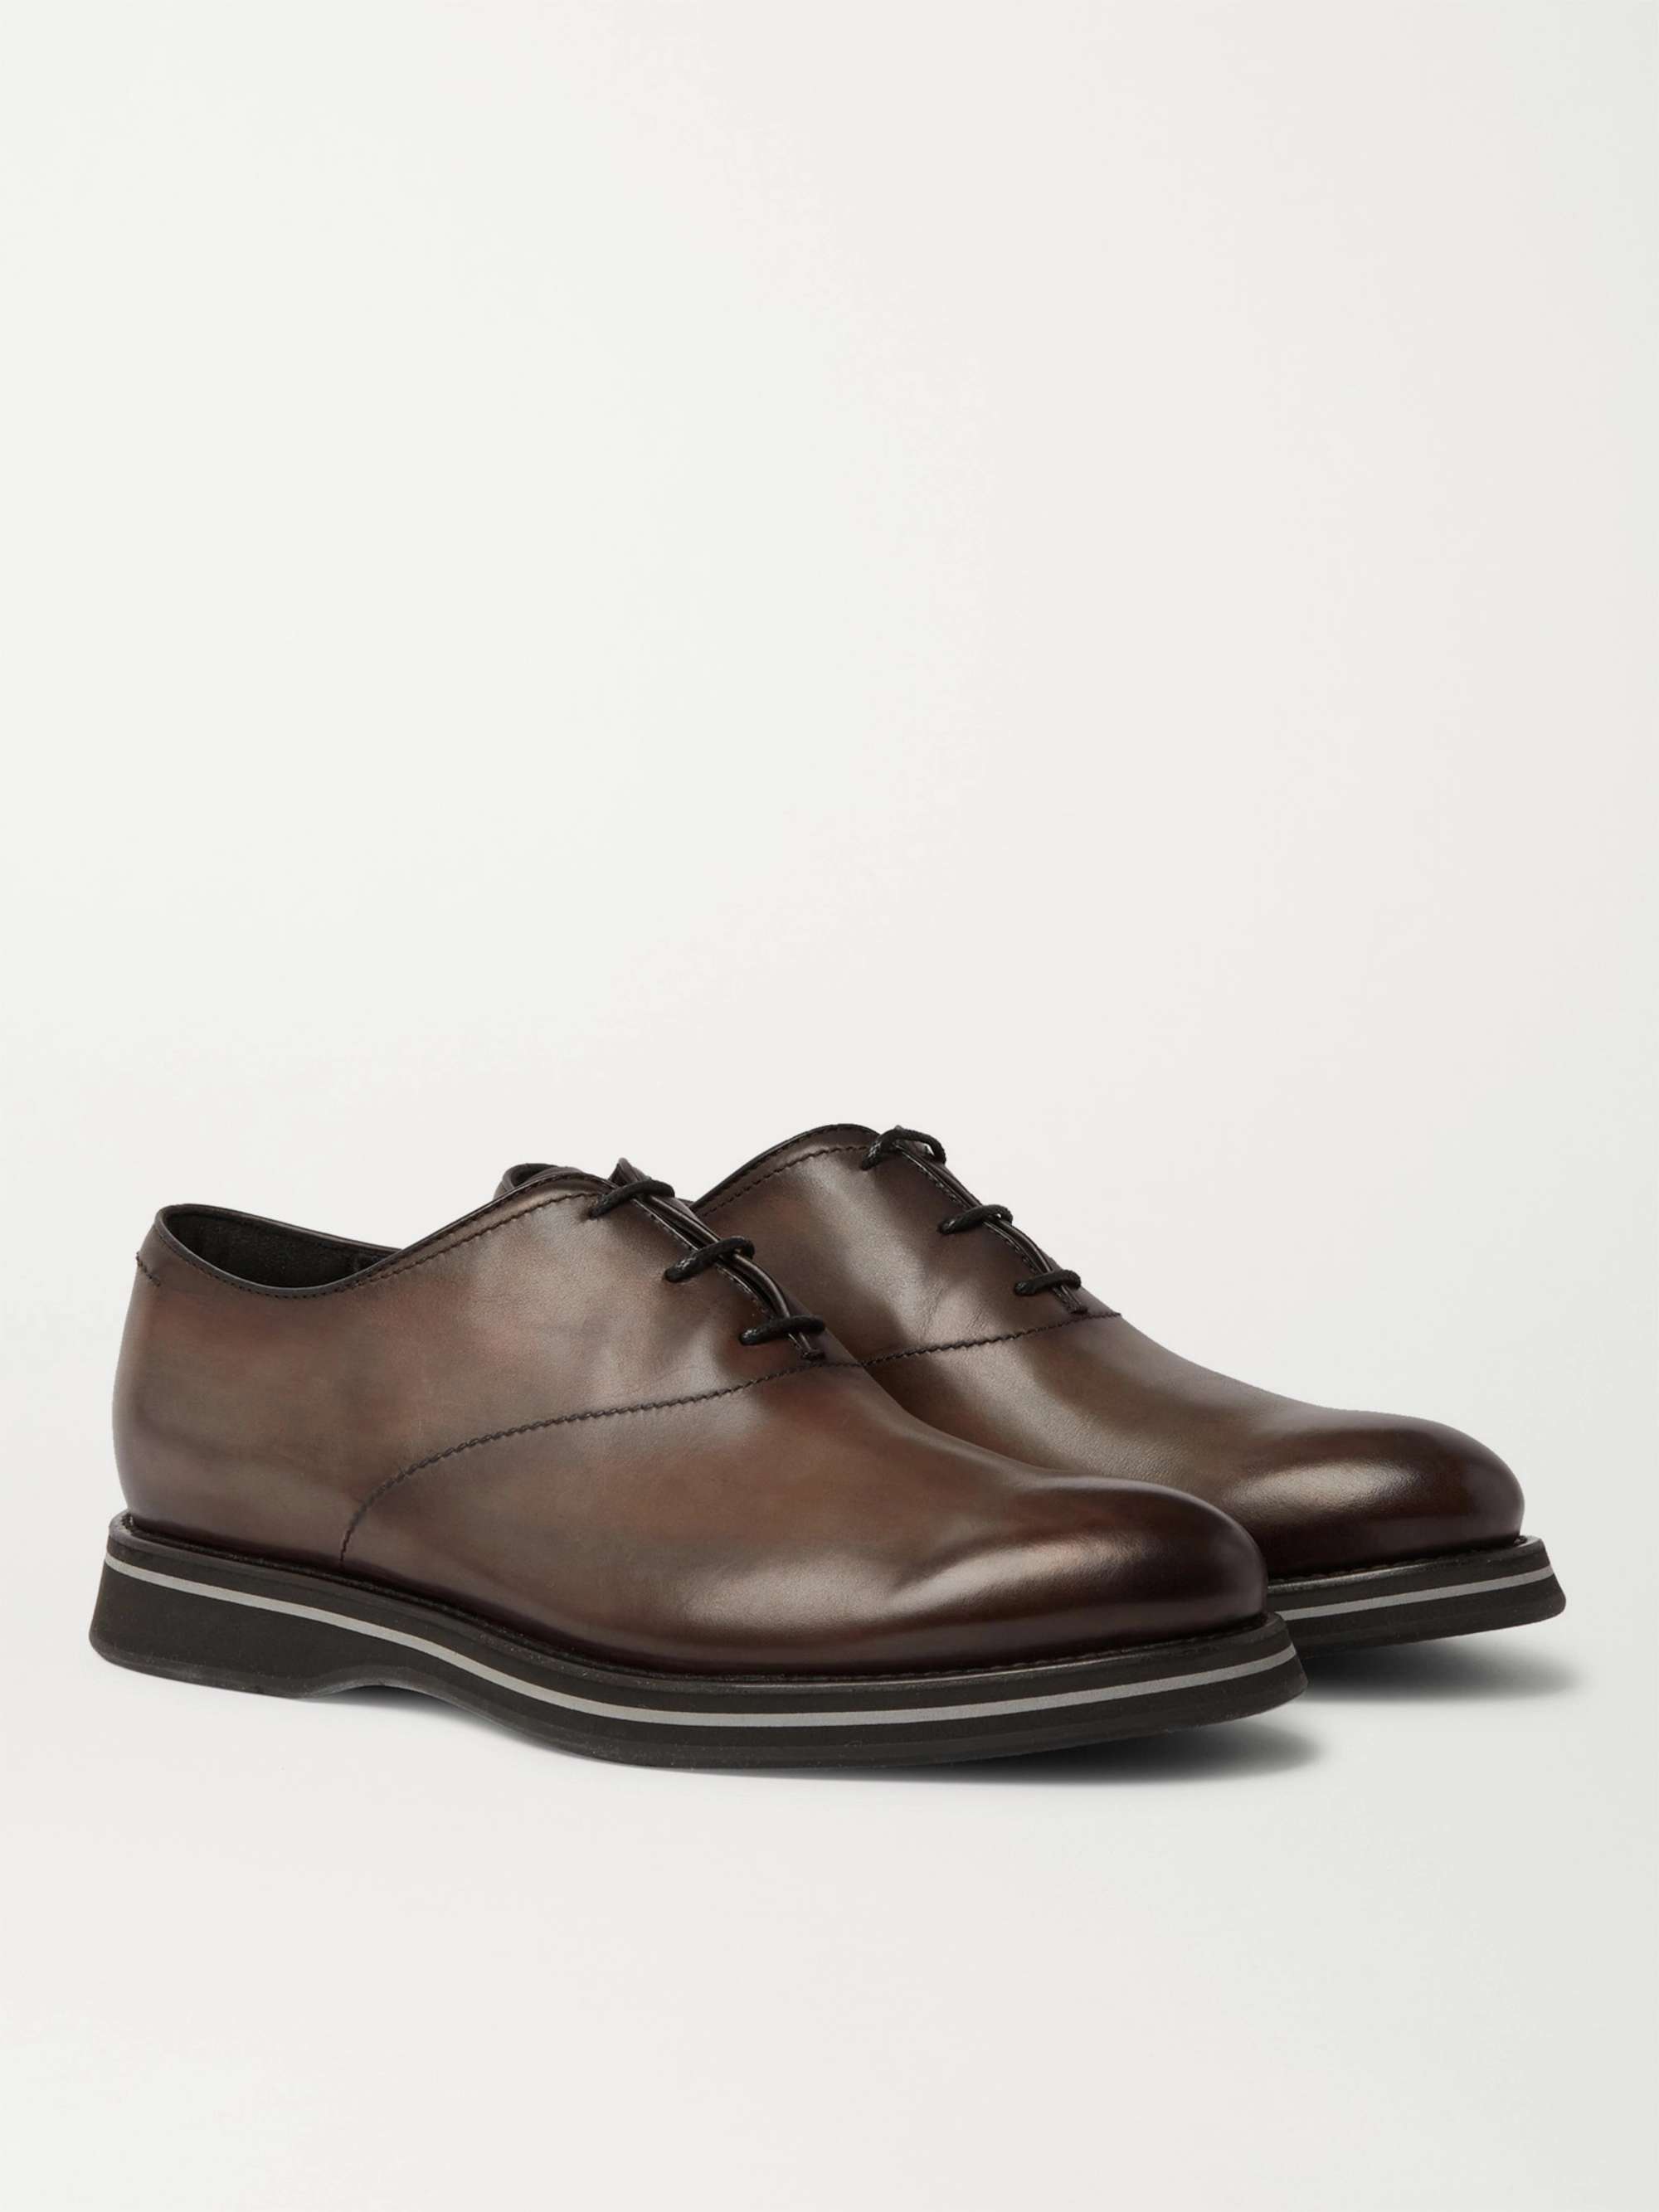 BERLUTI Alessio Padova Venezia Leather Oxford Shoes | MR PORTER